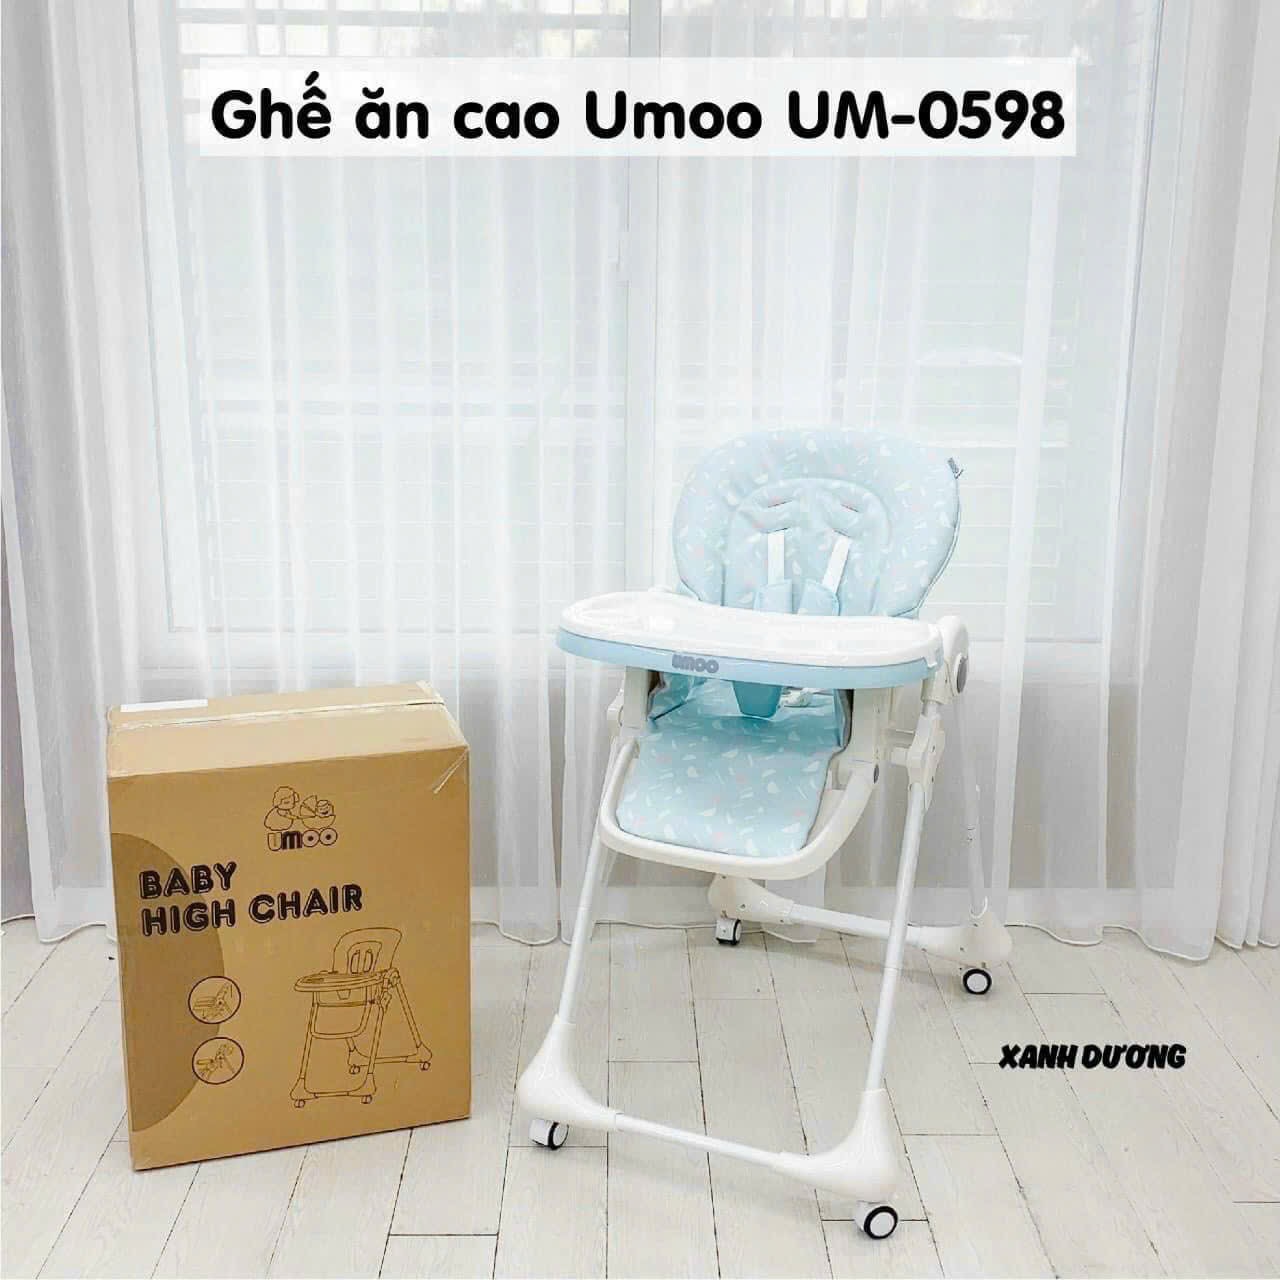 Ghế Ăn Dặm Umoo UM-0598